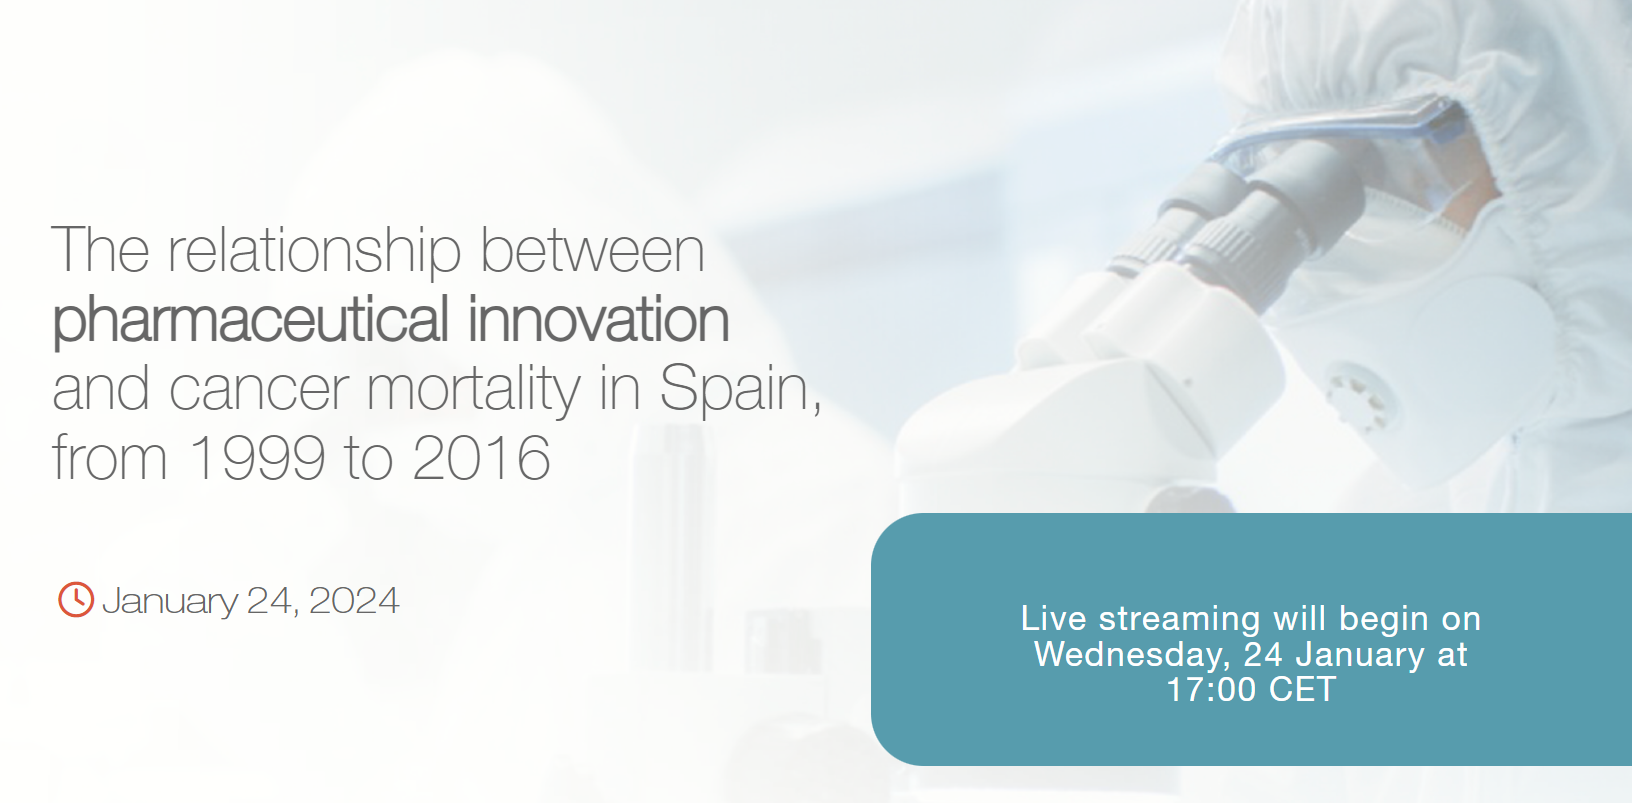 Relación entre innovación farmacéutica y mortalidad por cáncer en España (1999-2016)